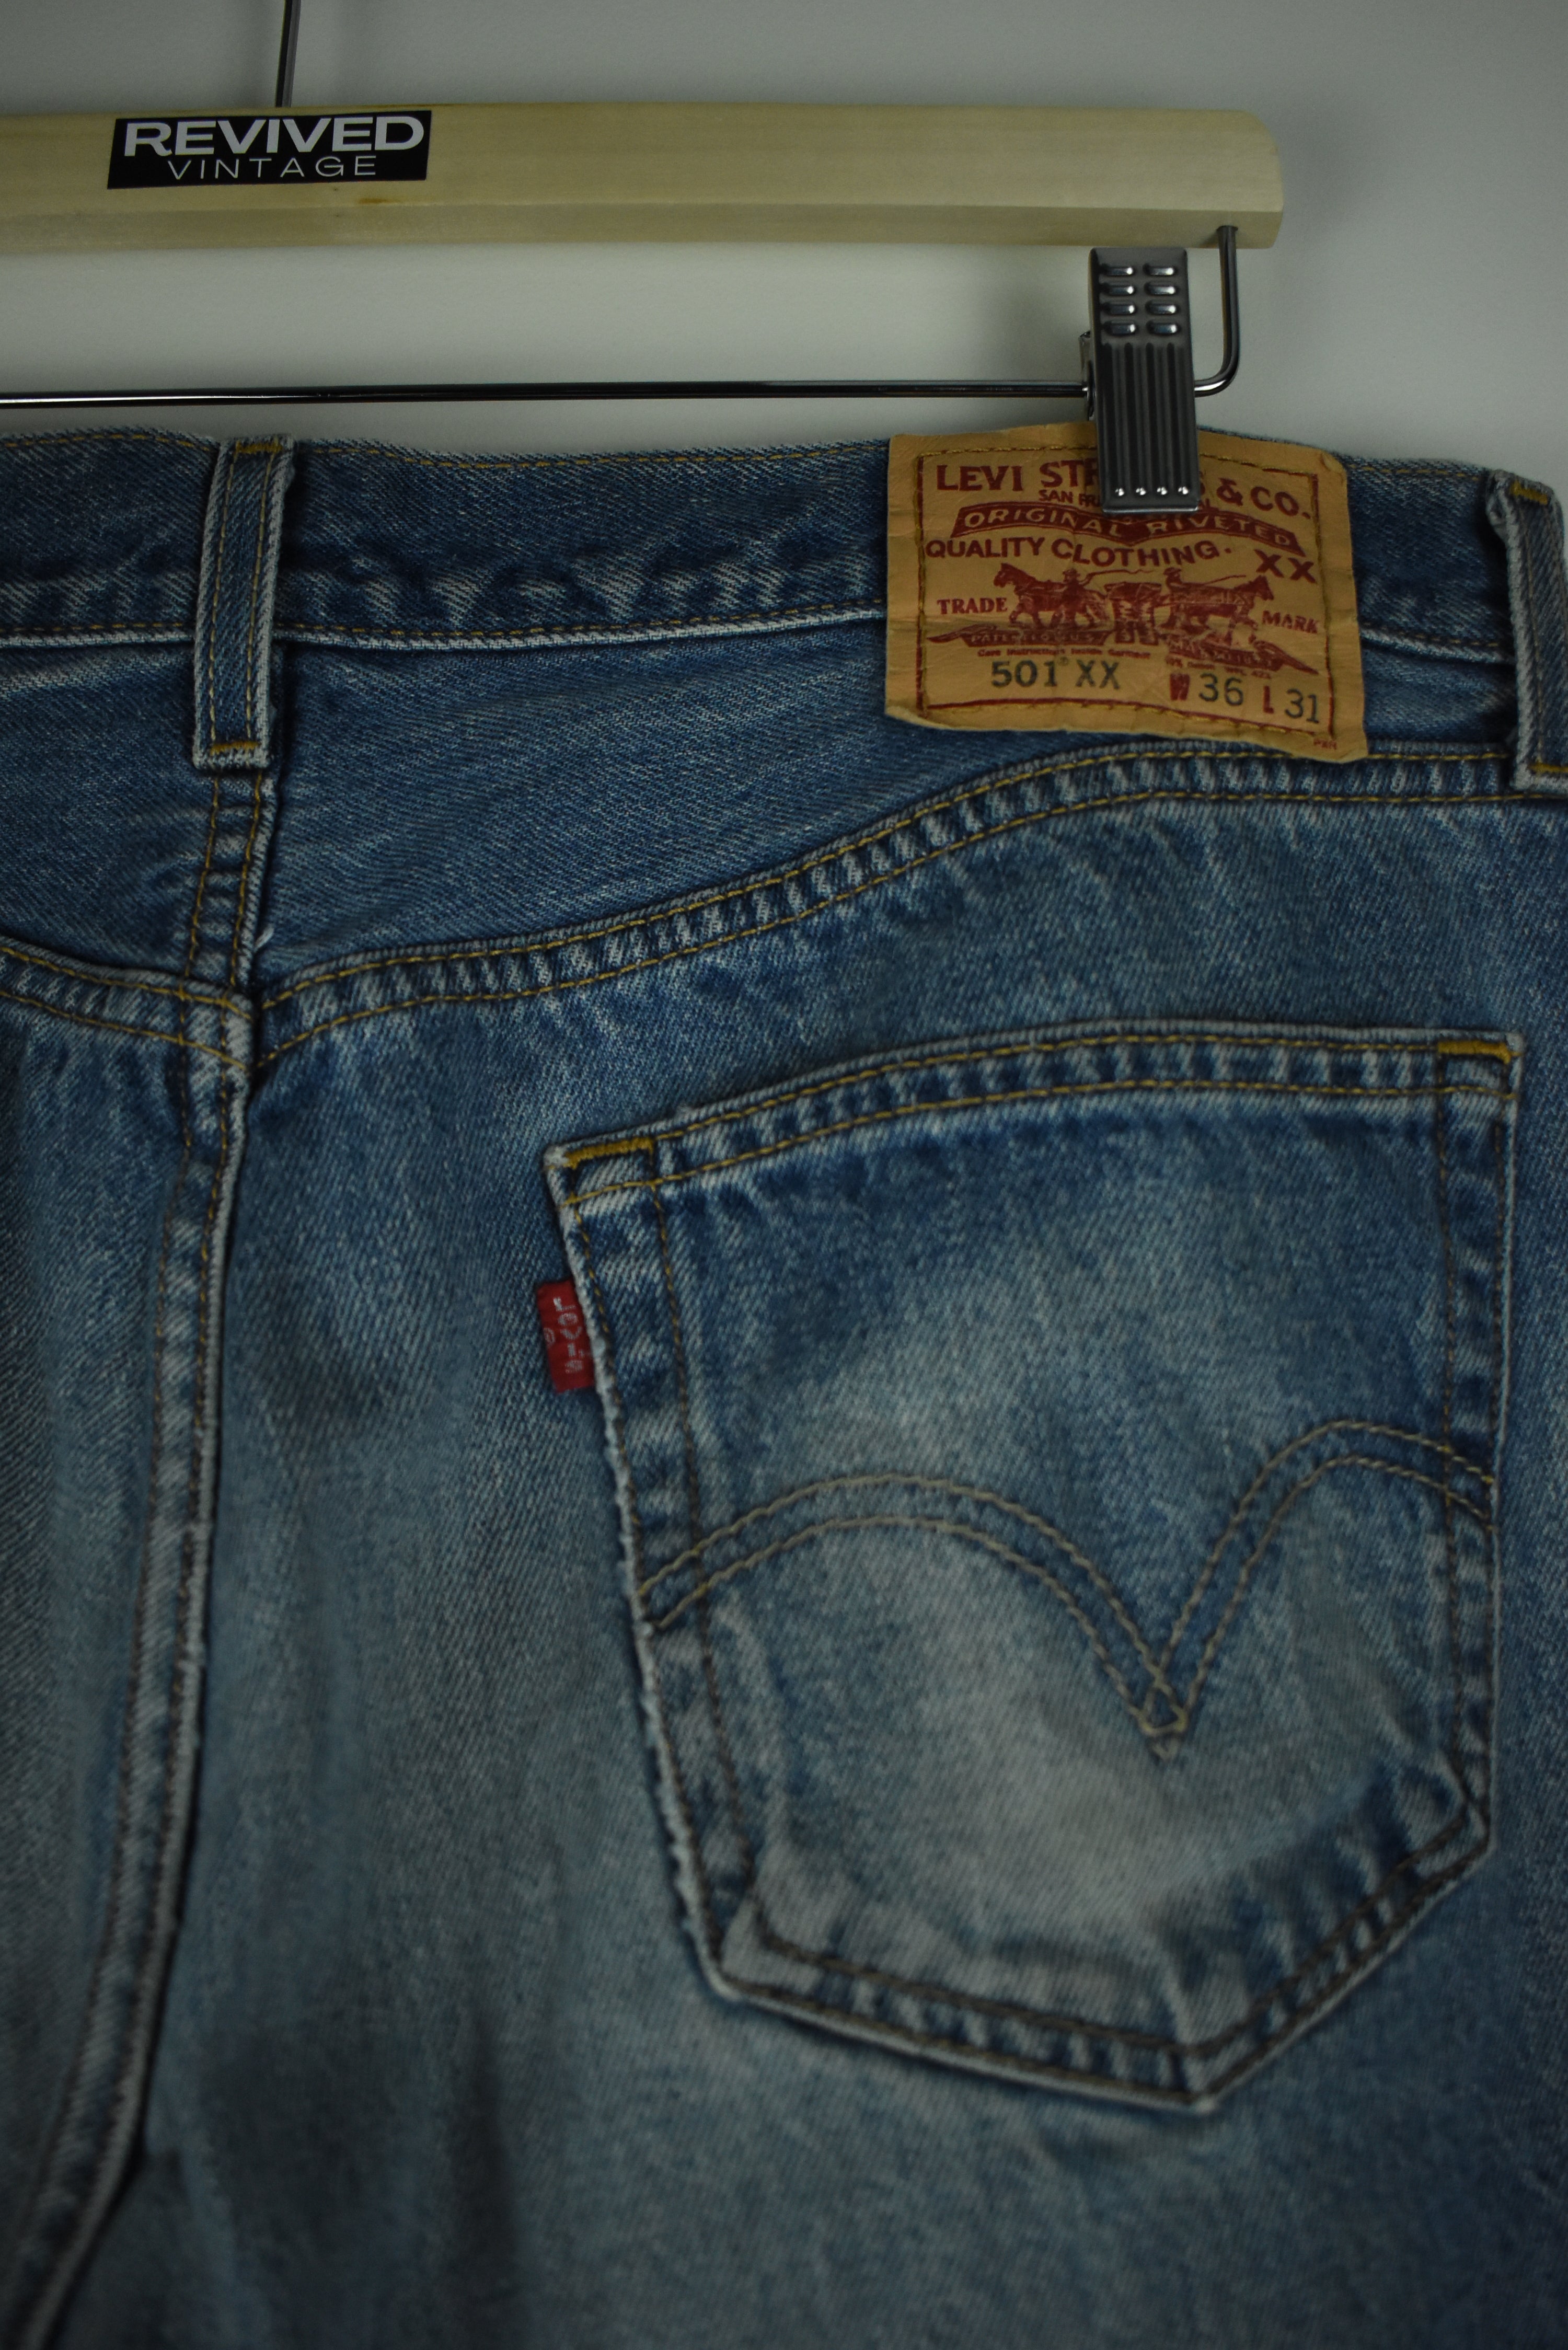 Vintage Levi's 501 Jeans 36 x 31